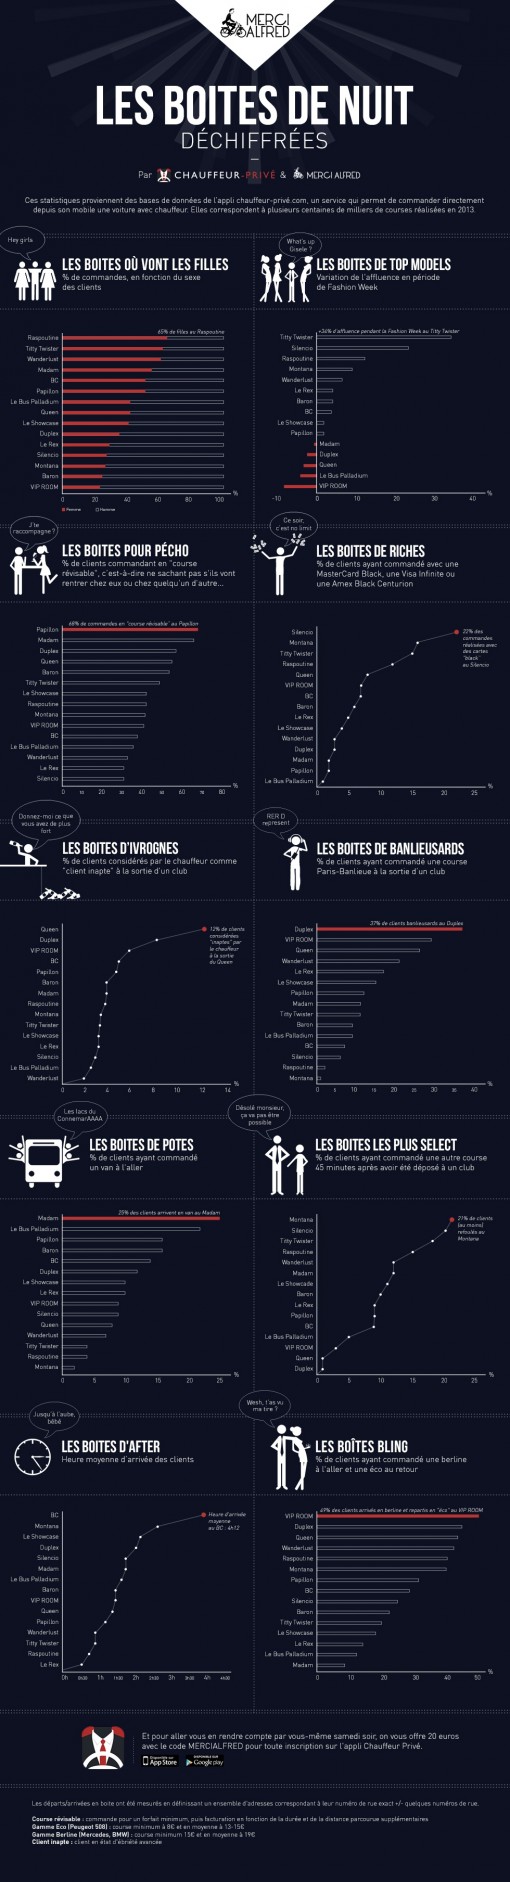 Boites de nuit parisiennes - Infographie